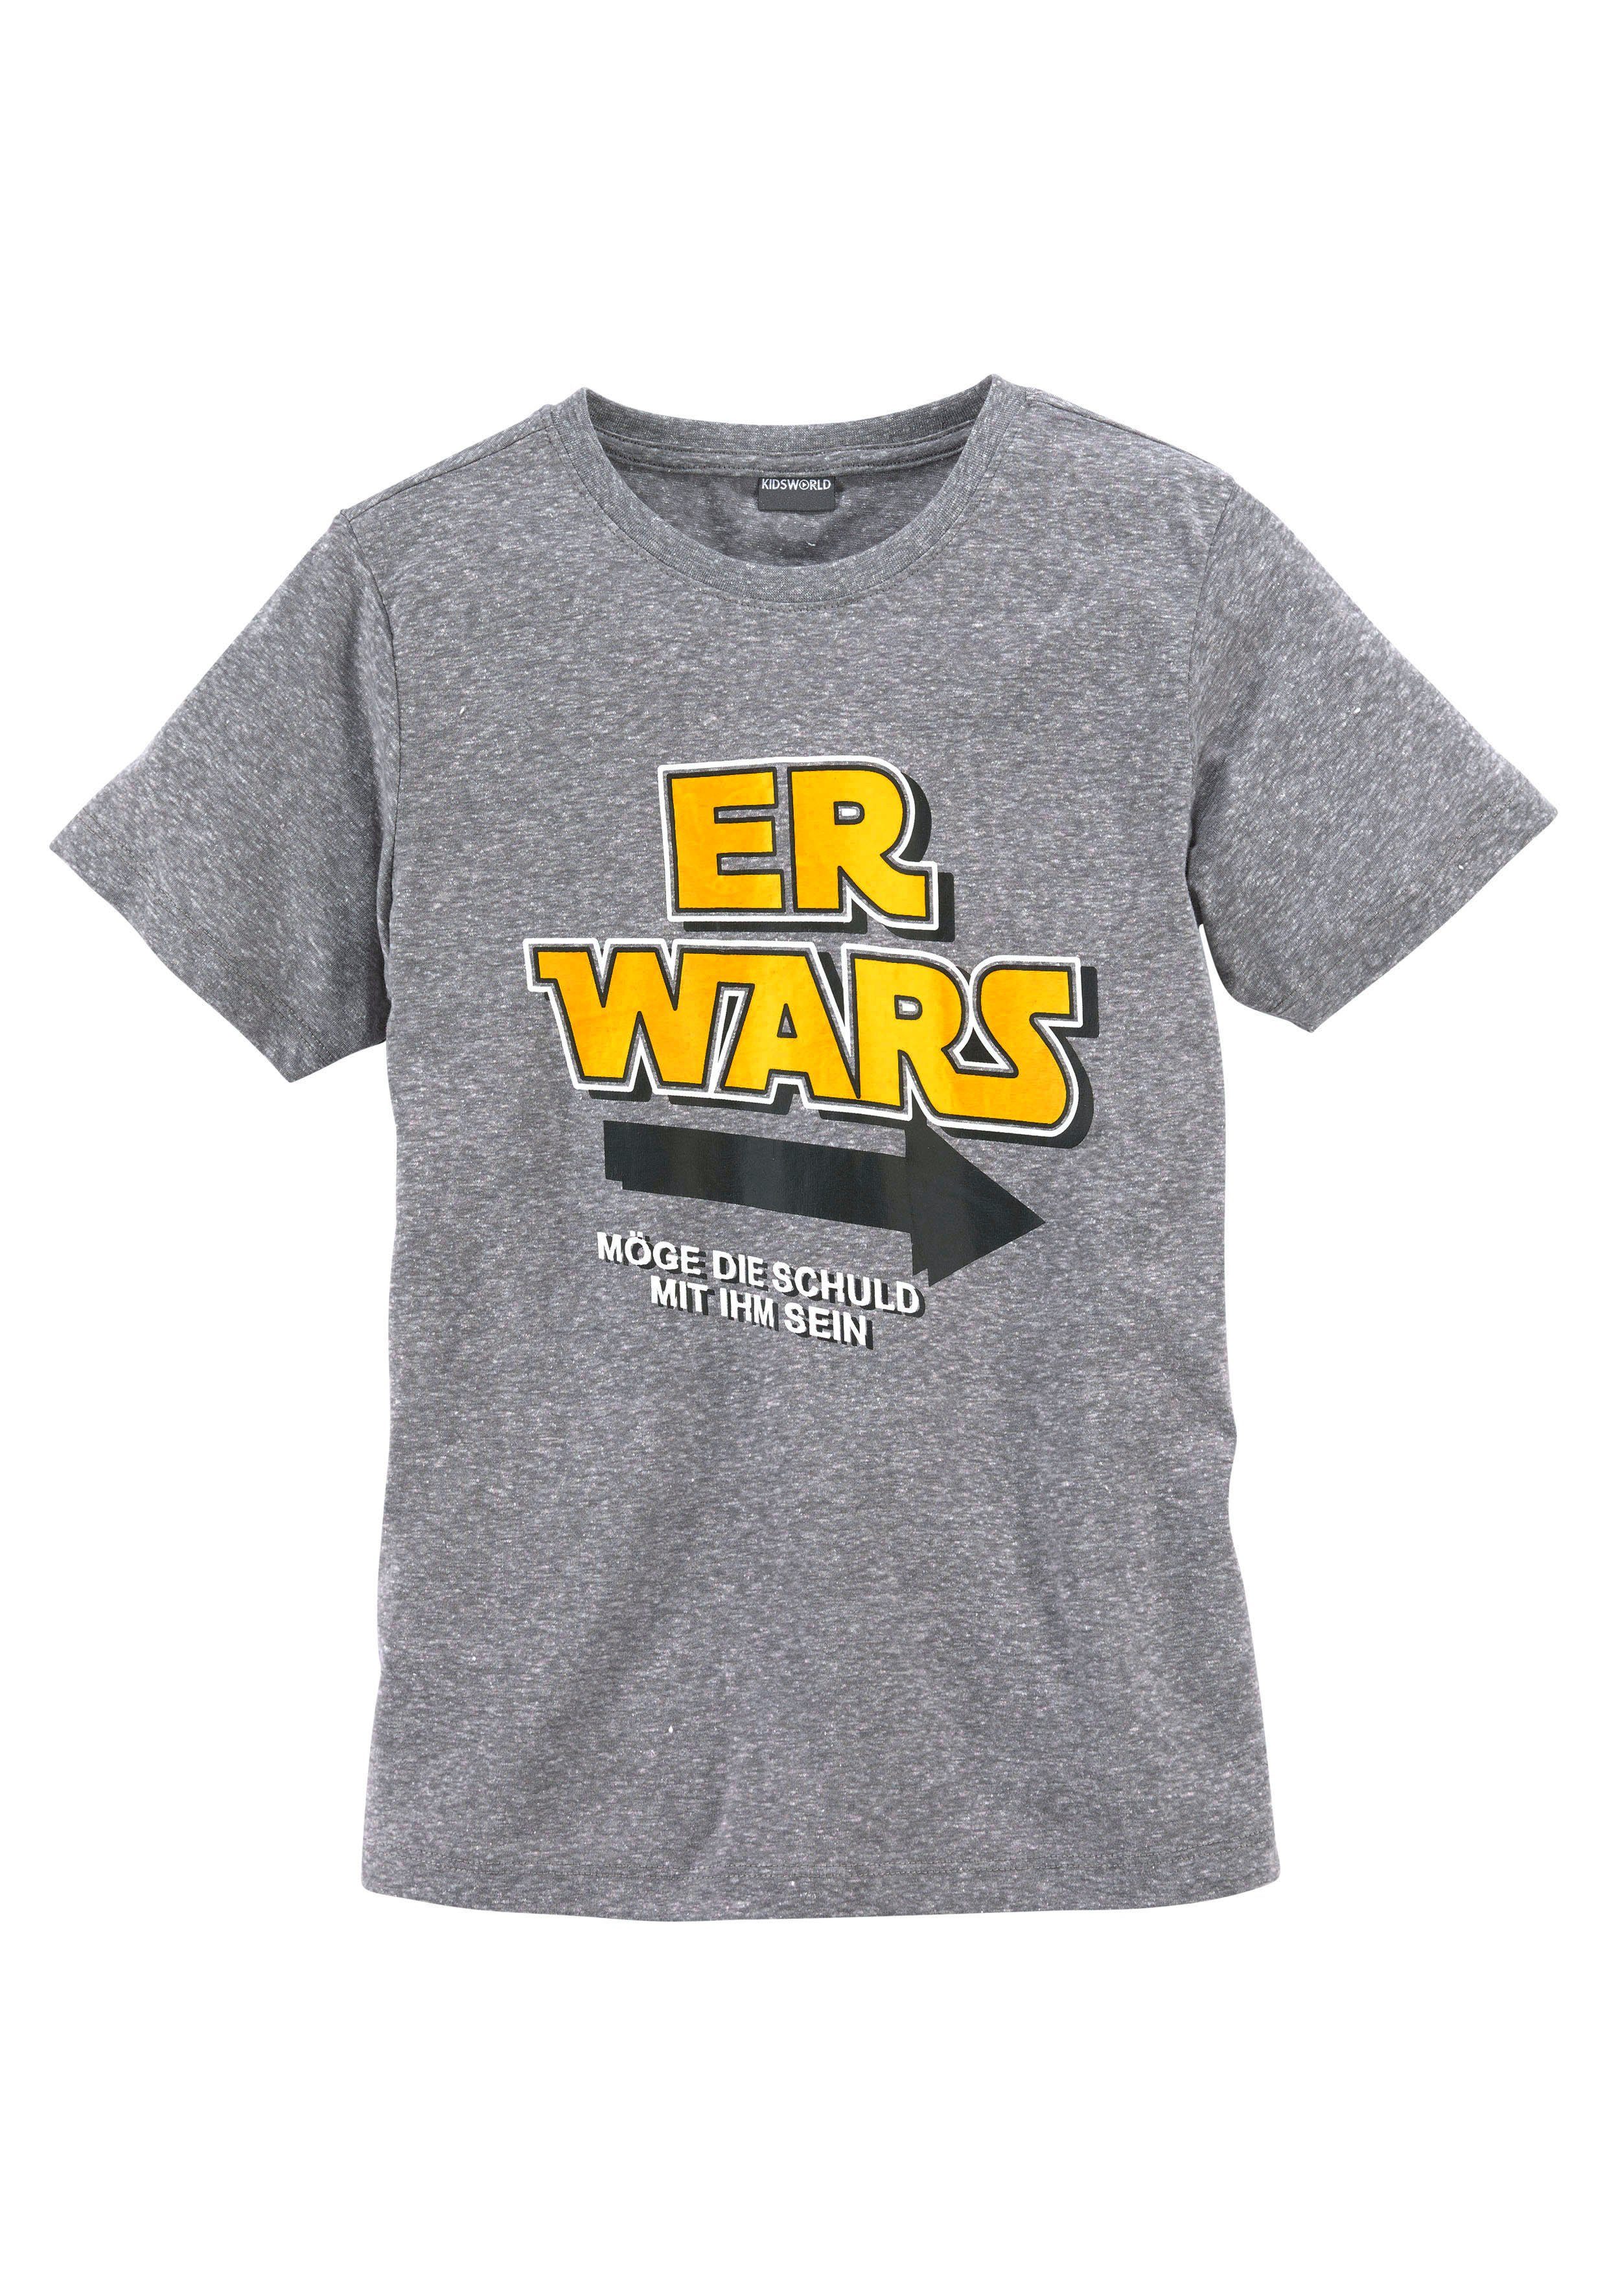 KIDSWORLD T-Shirt ER WARS, Spruch | T-Shirts